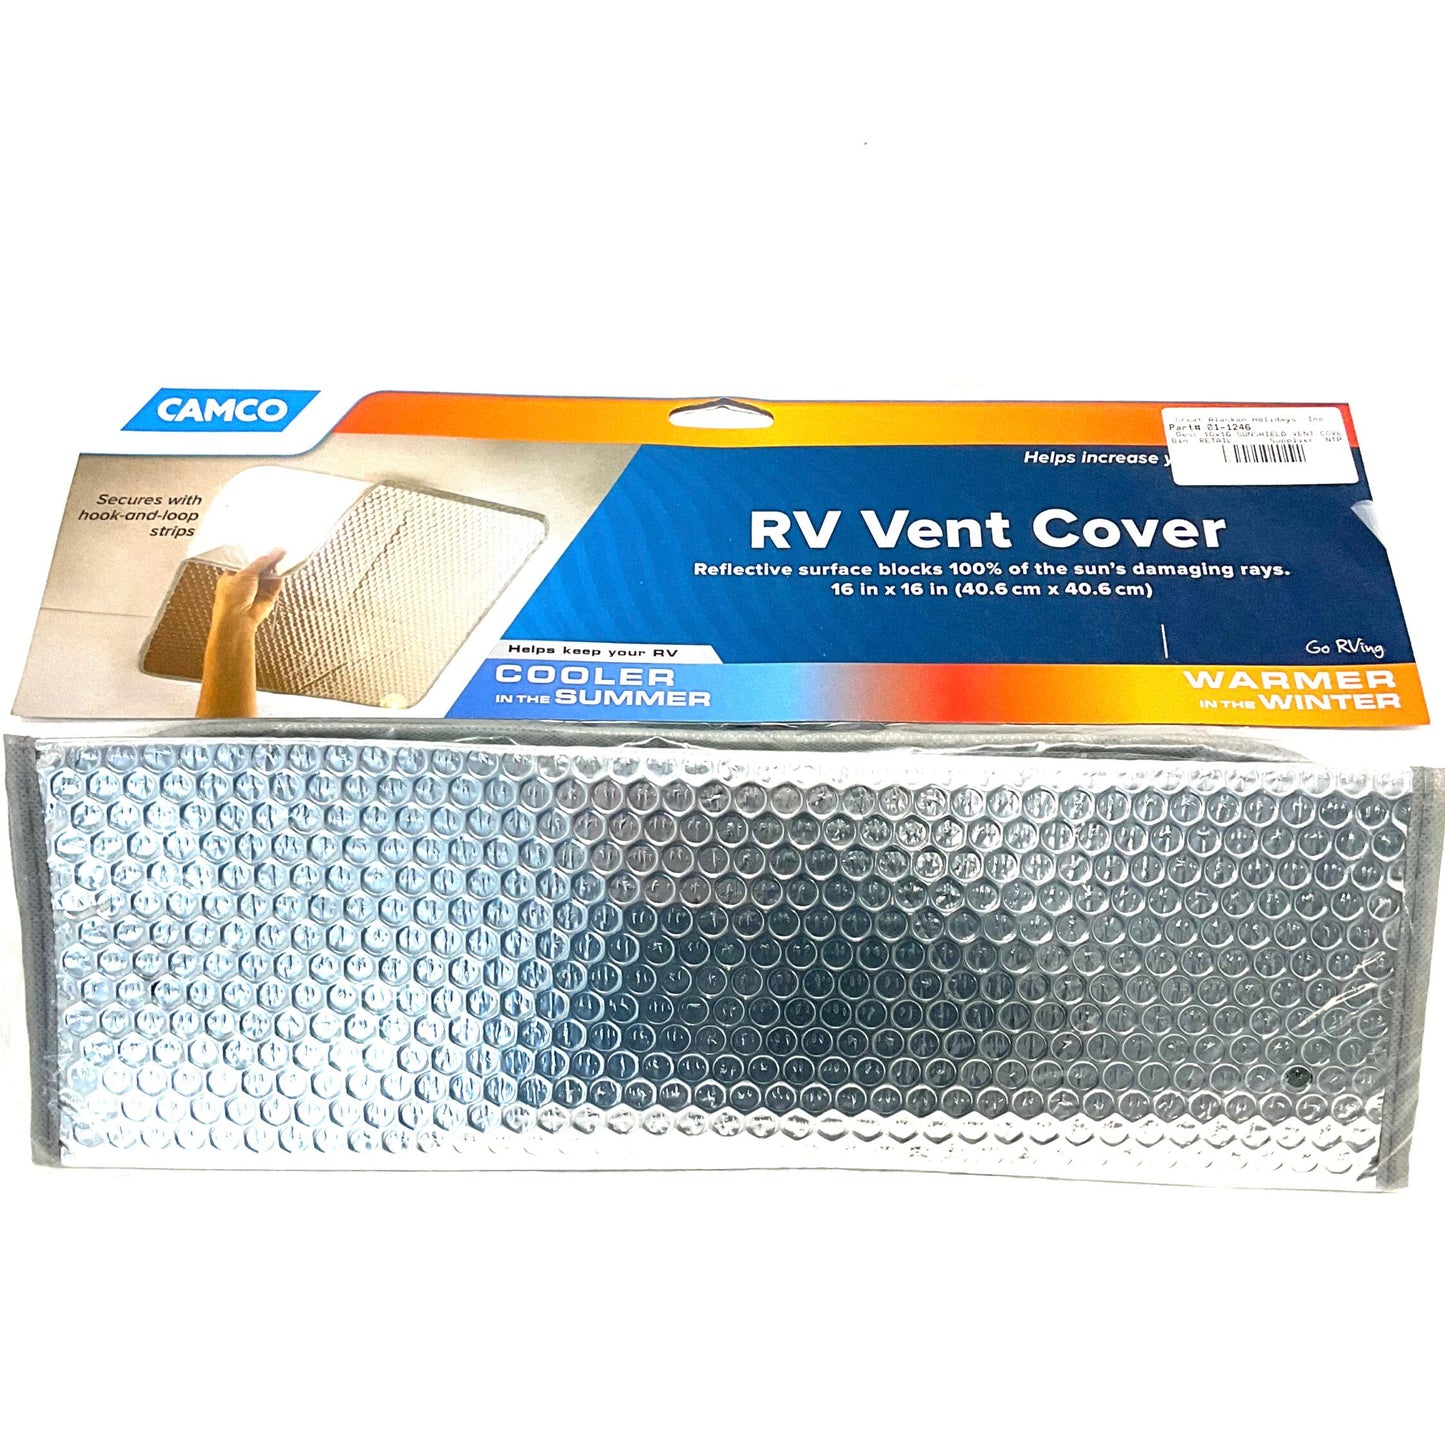 RV Vent Cover